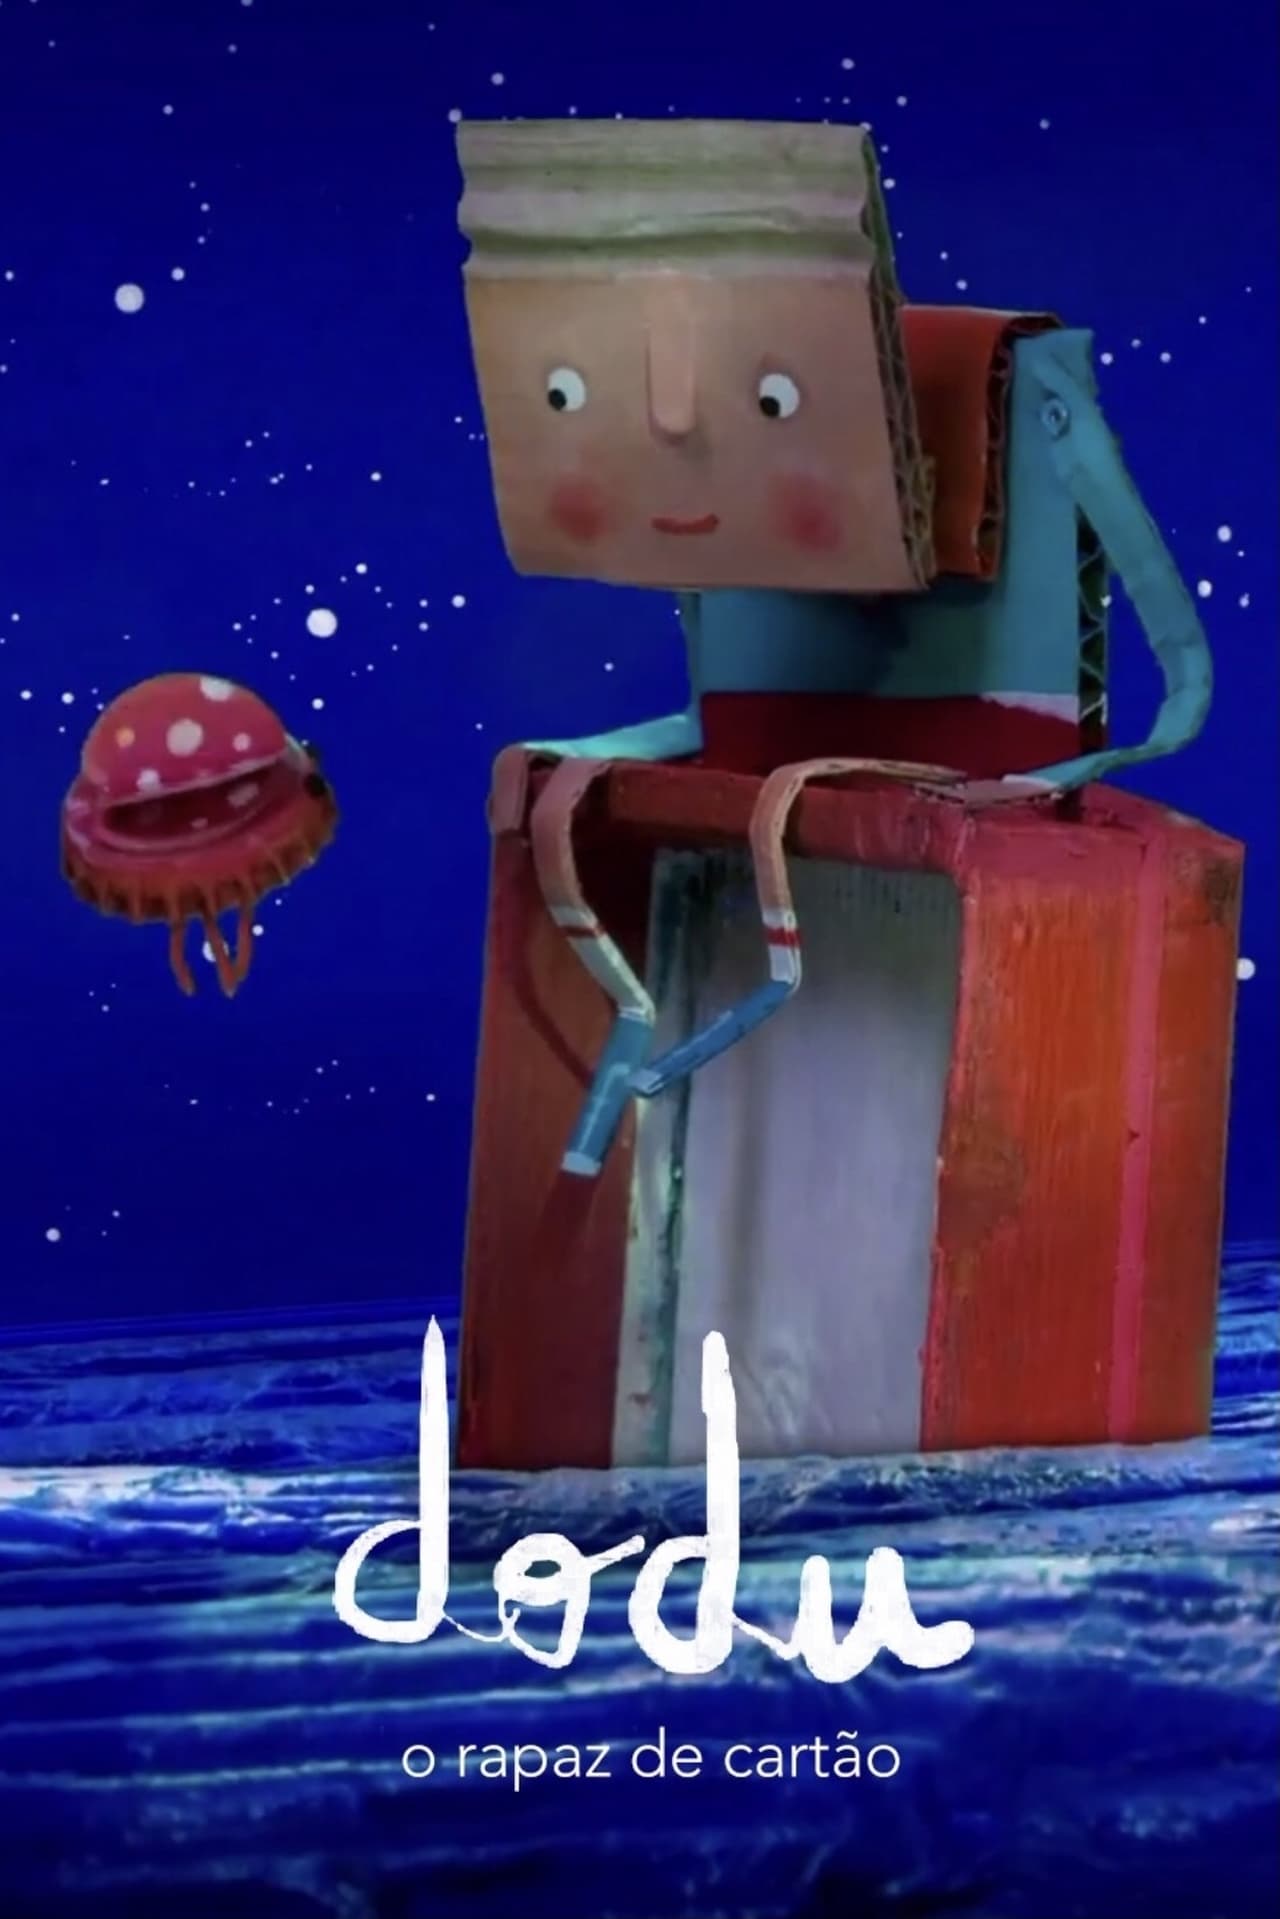 Dodu – The Cardboard Boy